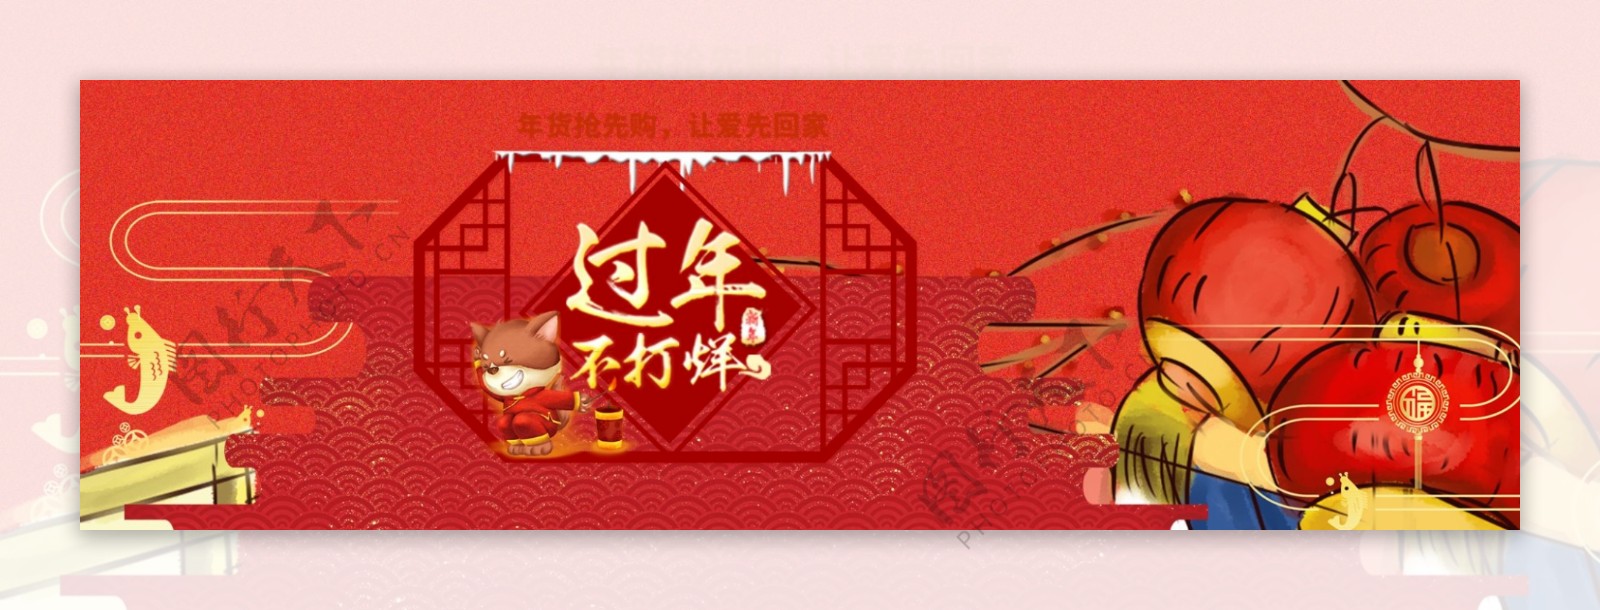 淘宝天猫促销新年年货节banner海报